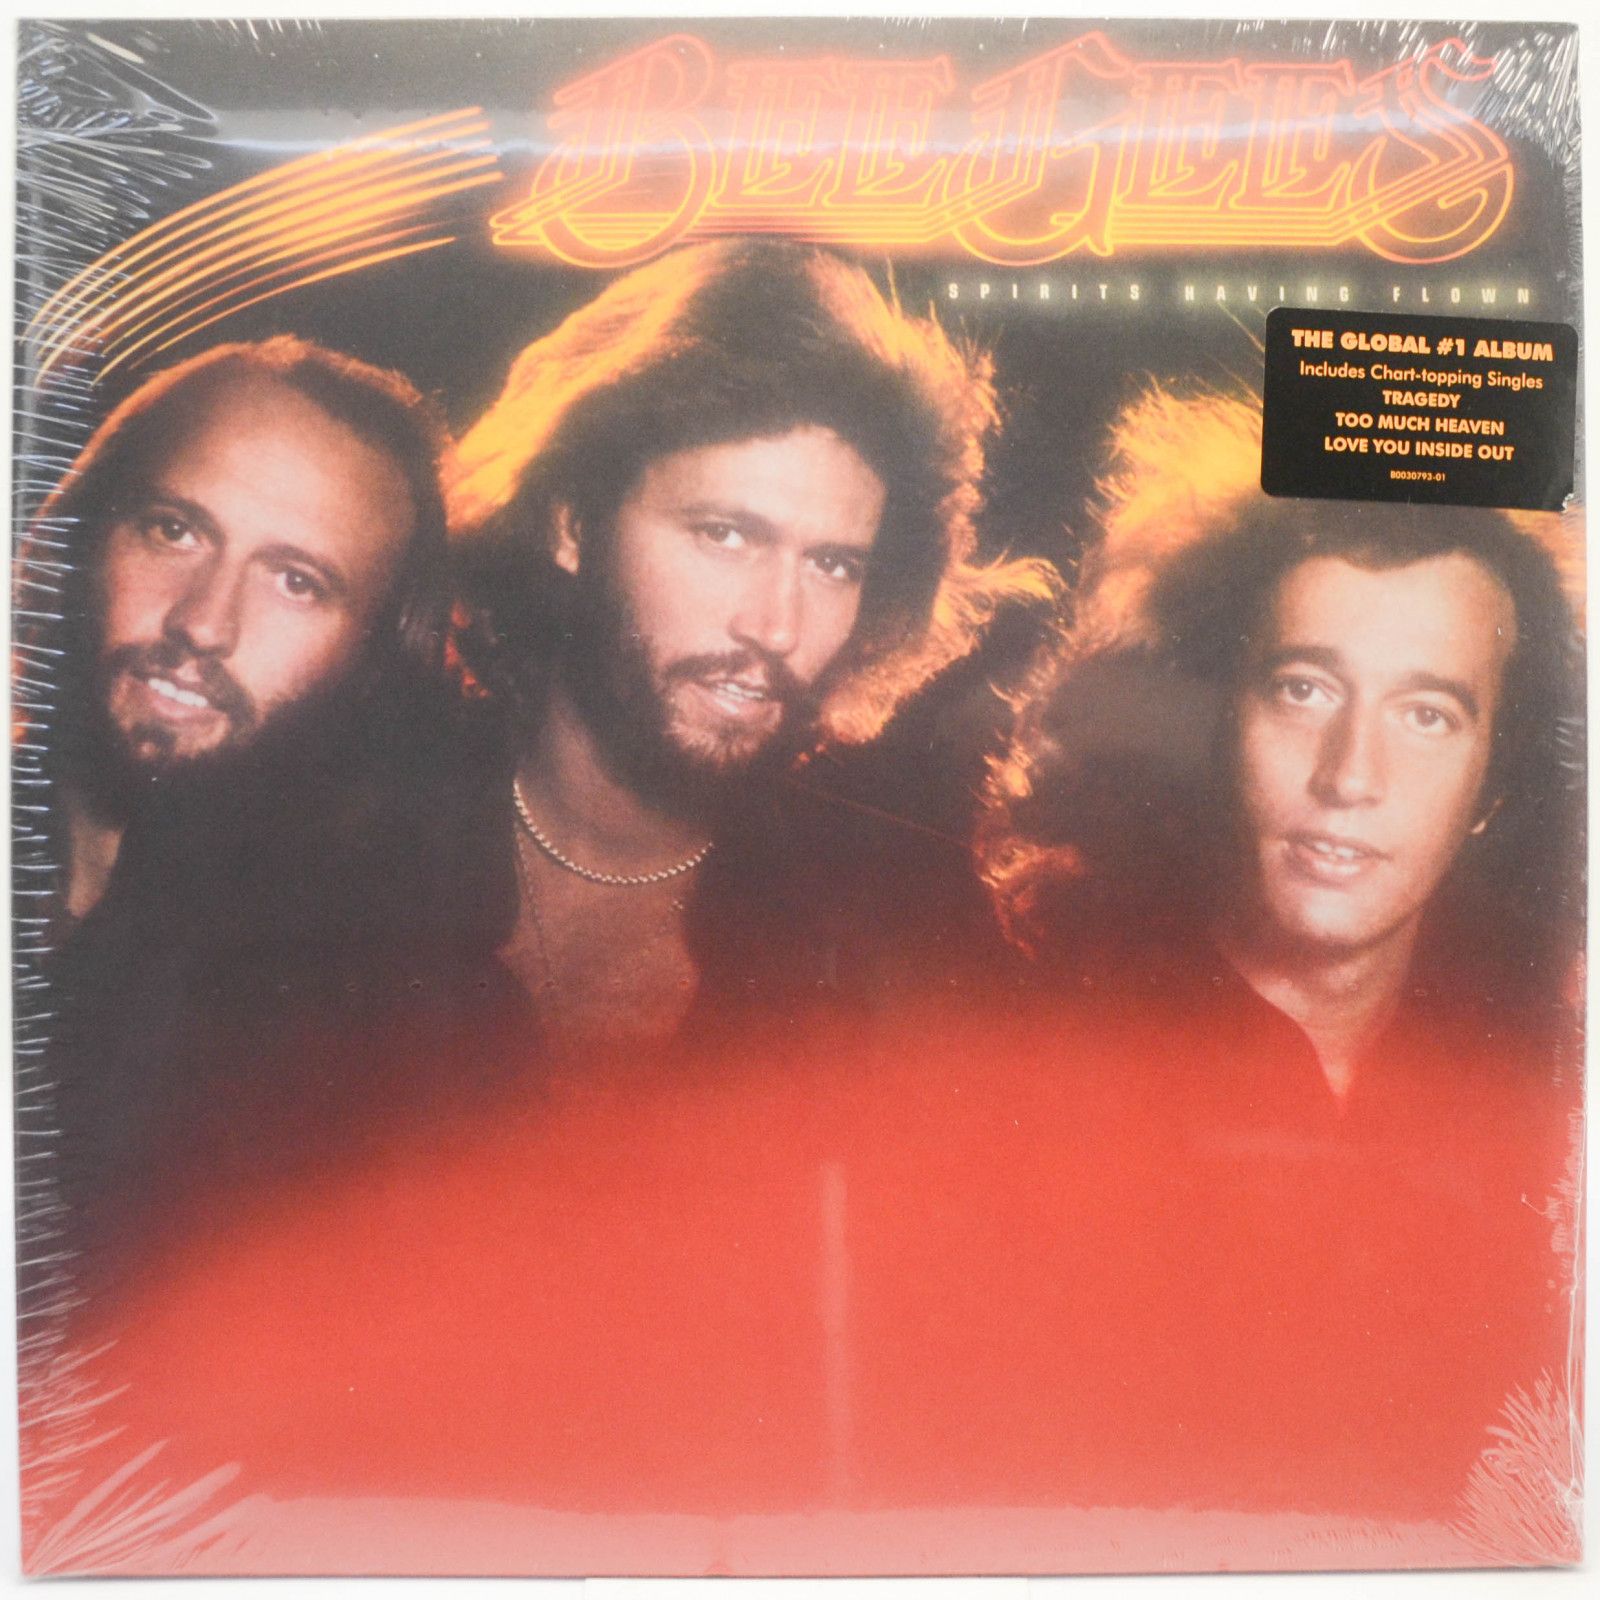 Bee Gees — Spirits Having Flown, 1979